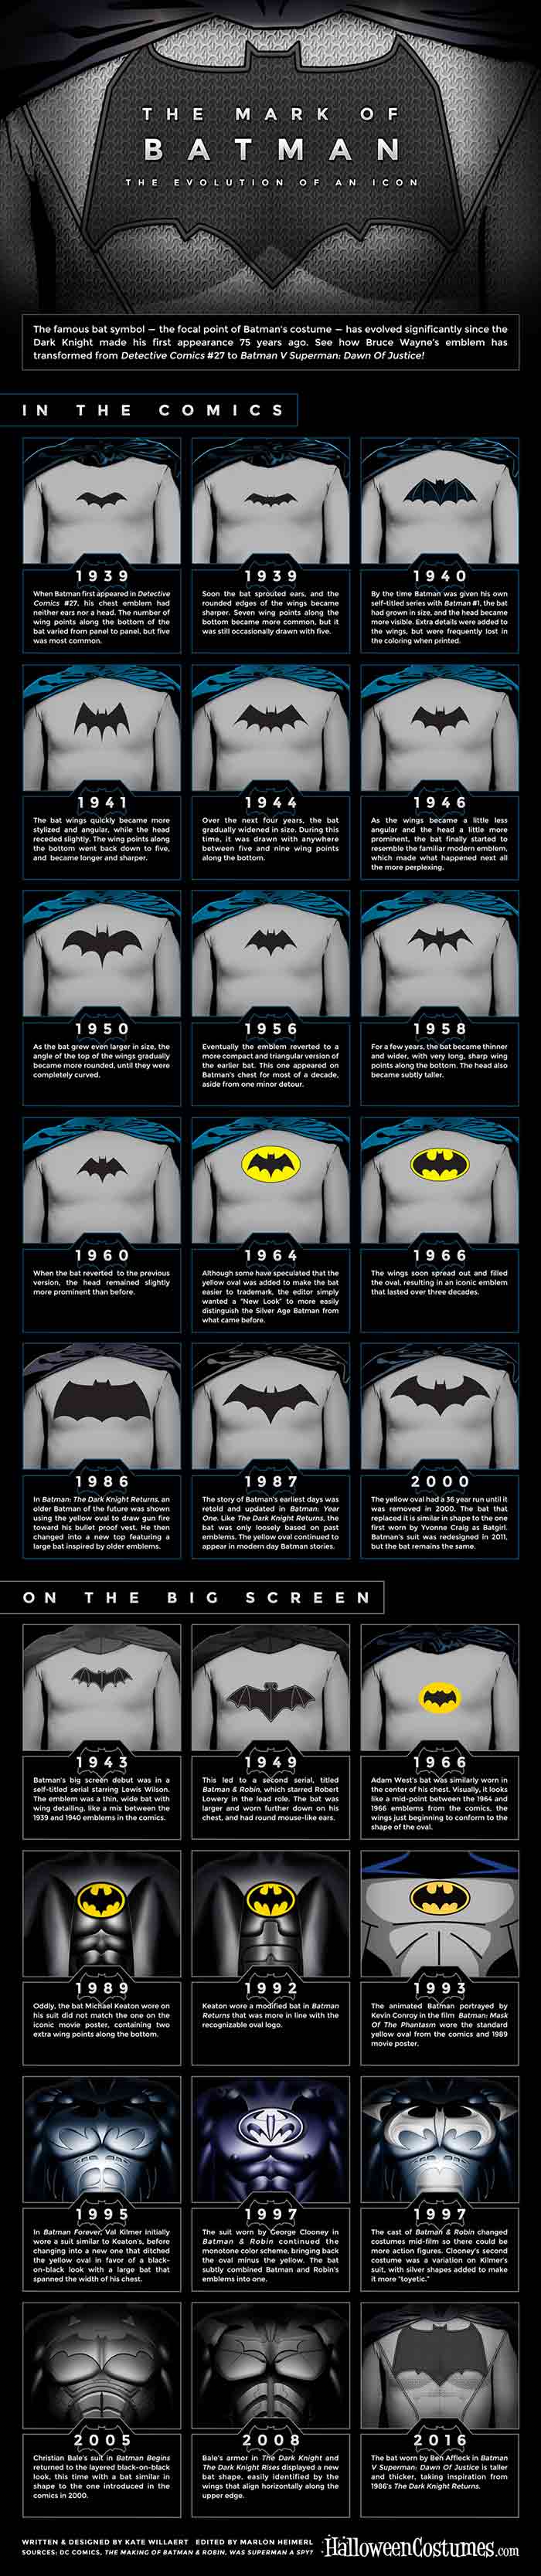 Evolución de Batman y su historia